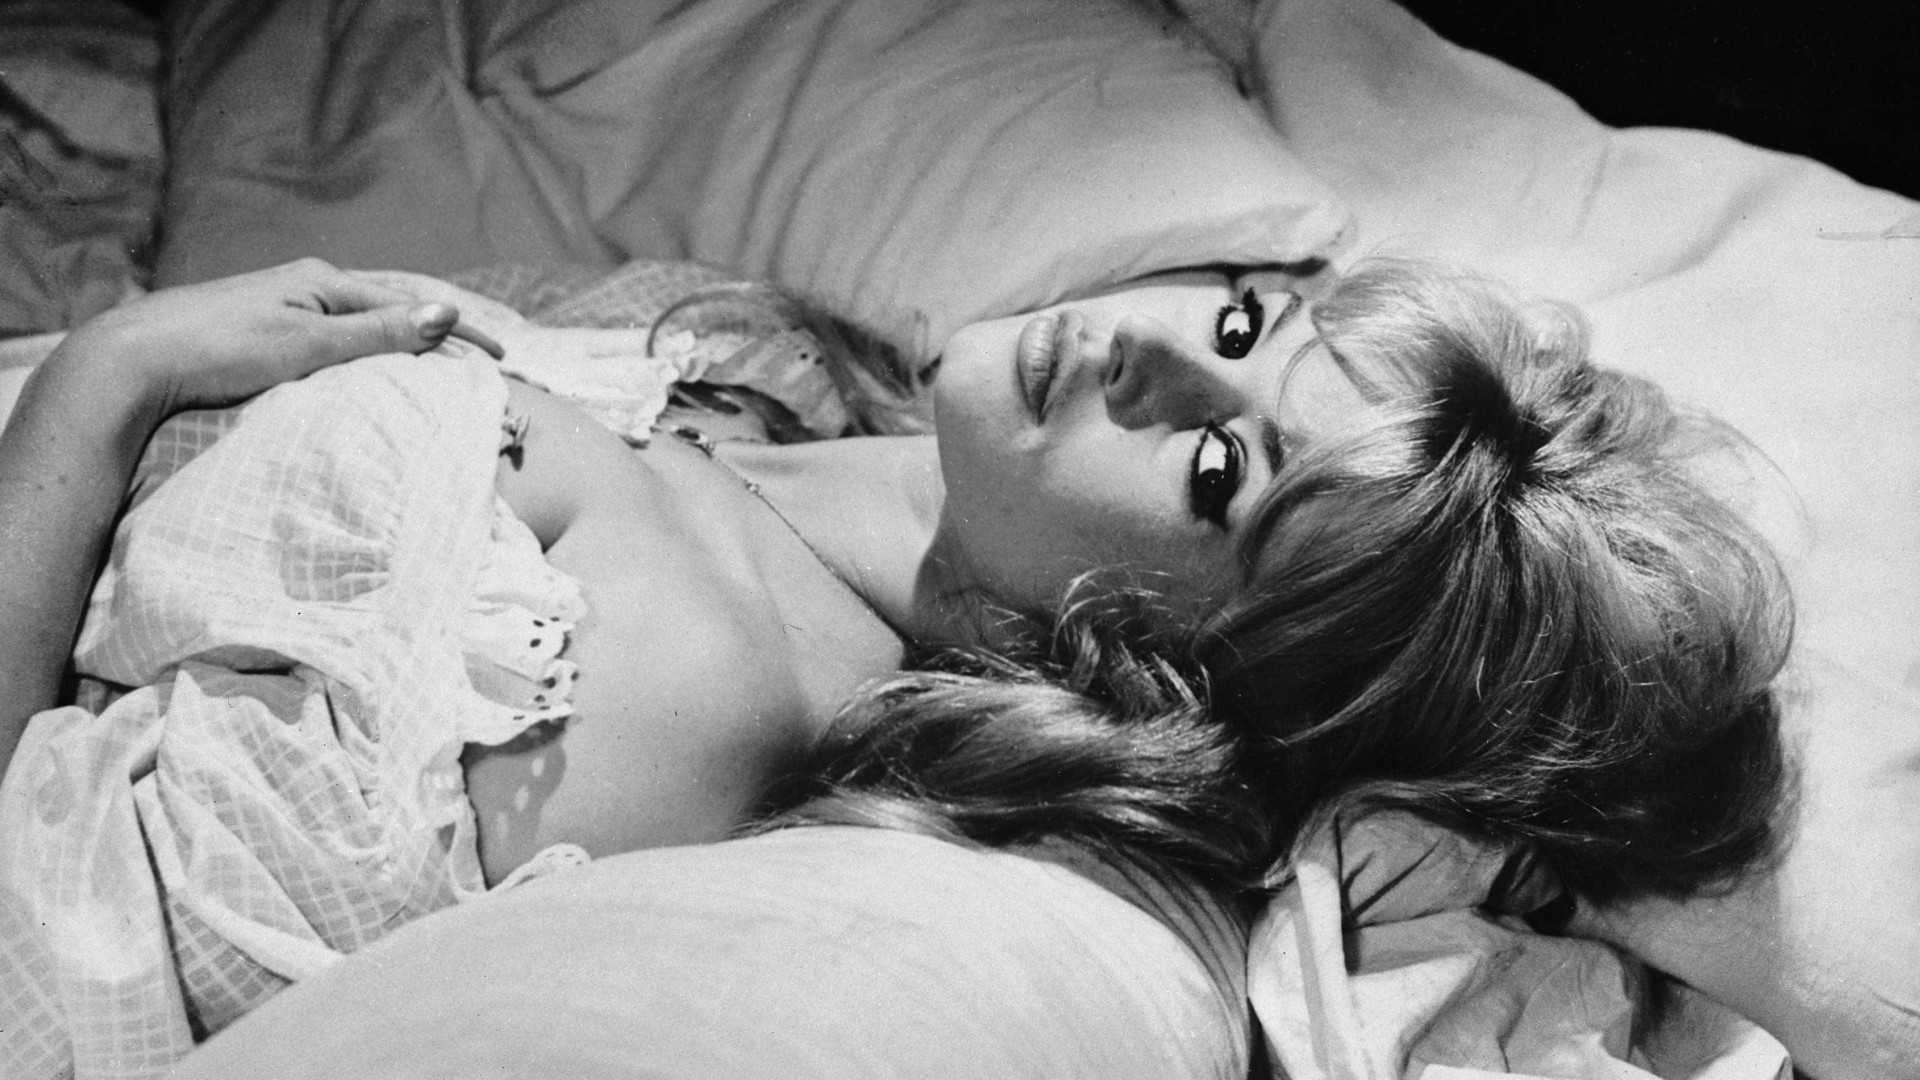 Inspirado em Brigitte Bardot, corte 'swag hair' é usado por famosas